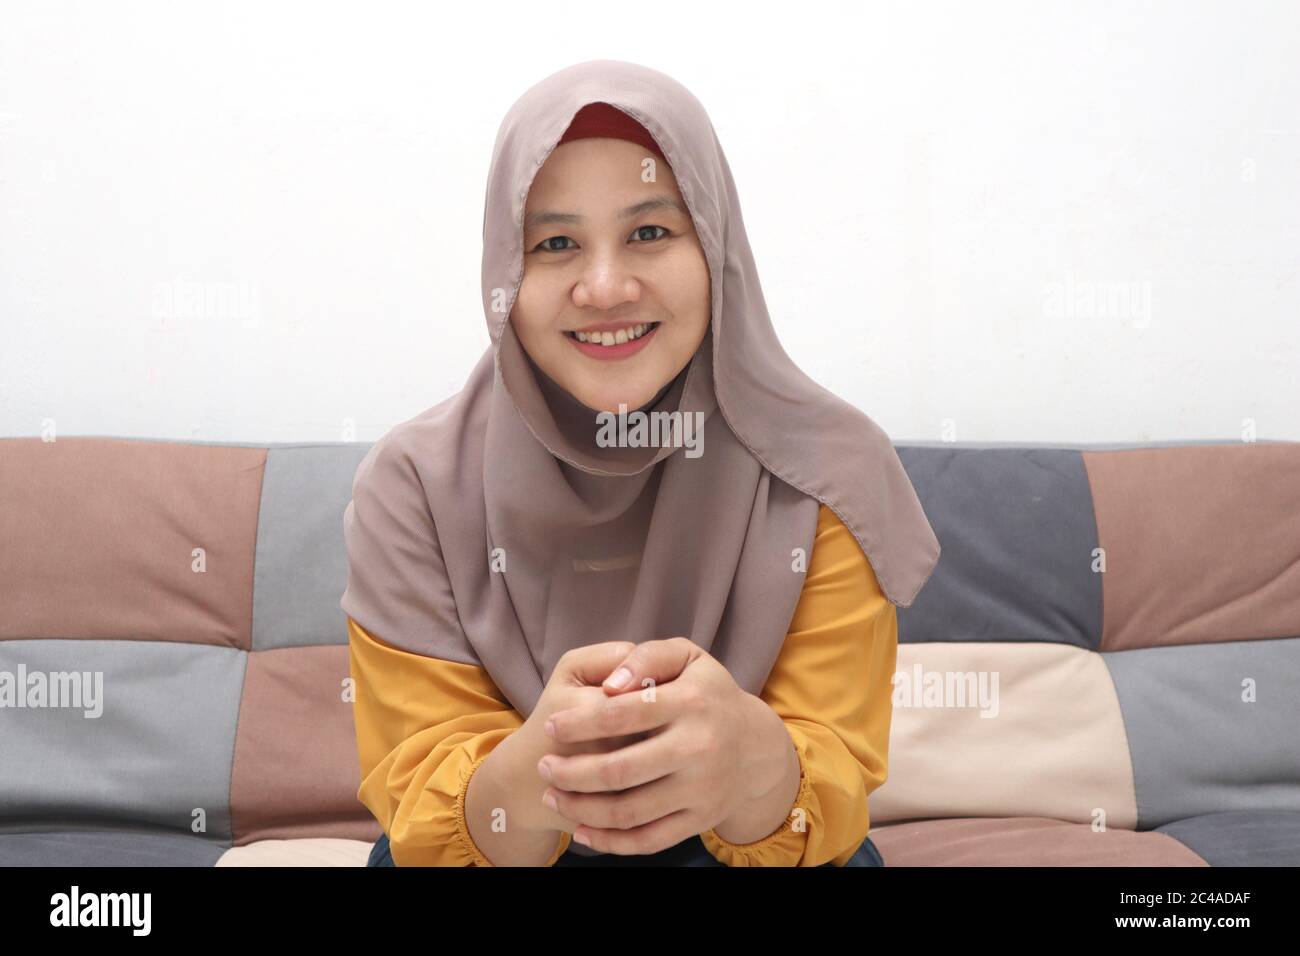 Bella donna musulmana asiatica facendo selfie ritratto al telefono o facendo videochiamata mentre si siede sul divano, felice sorridente espressione allegra Foto Stock